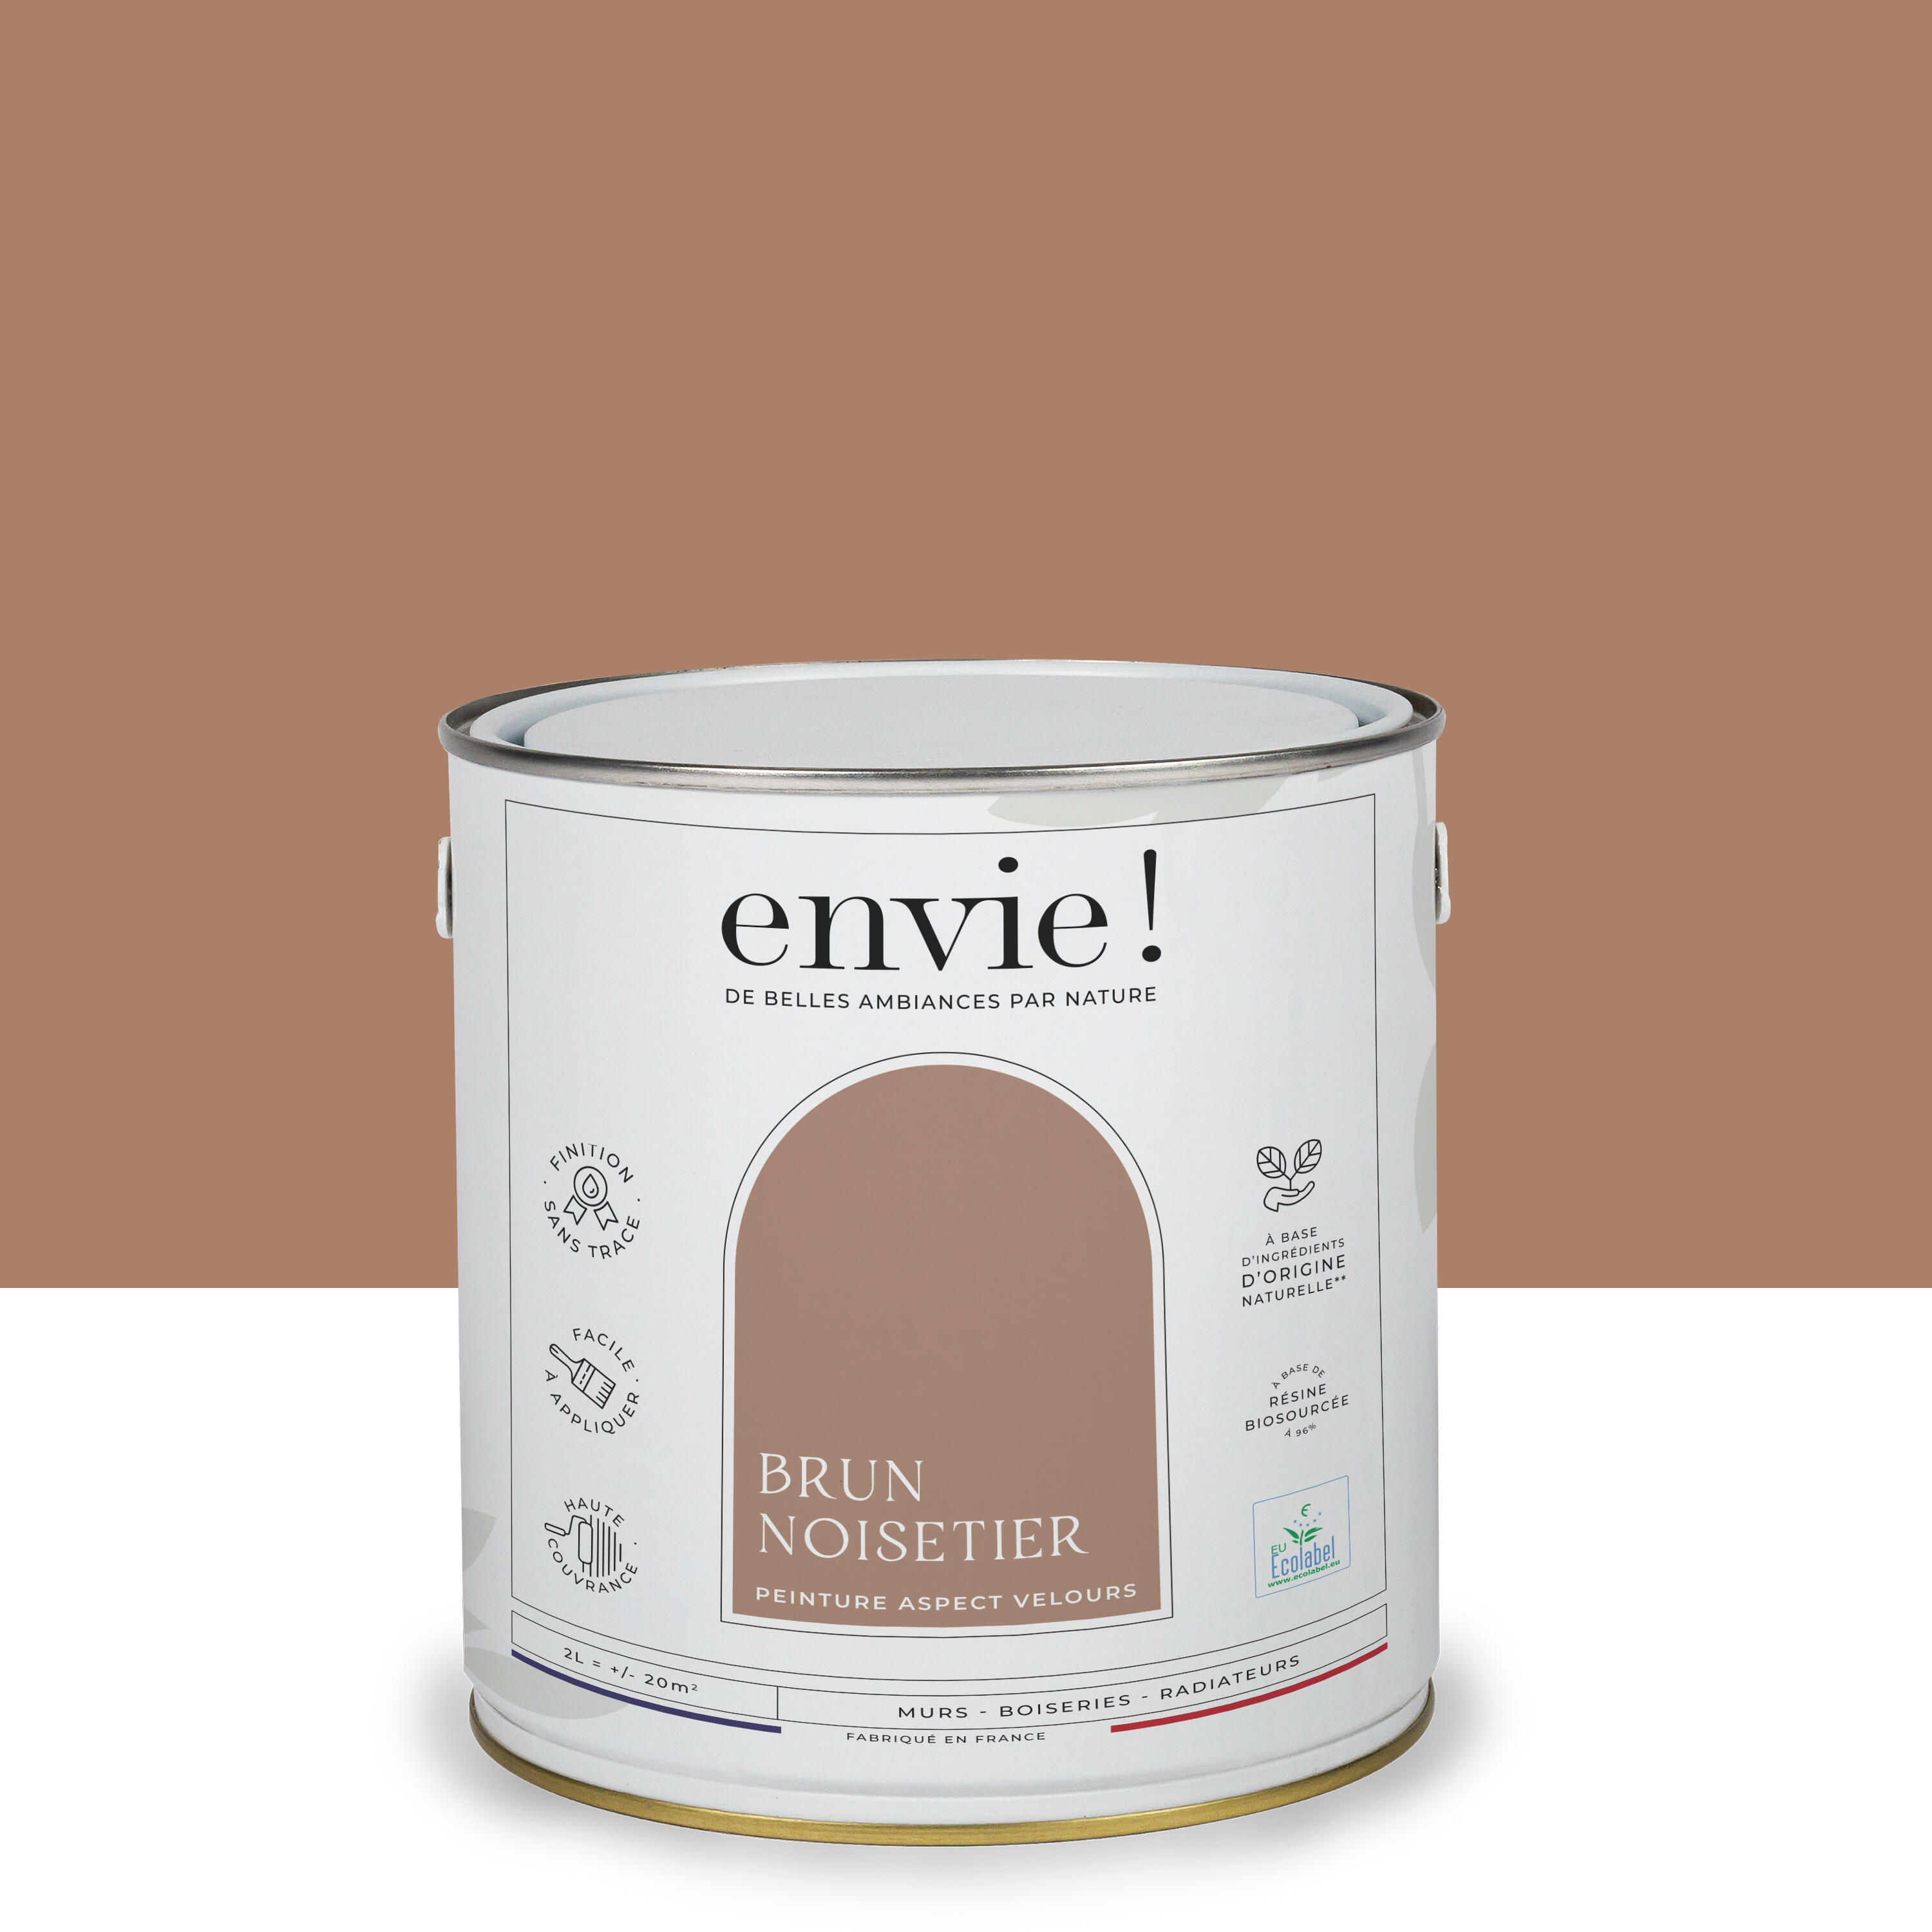 Peinture mur, boiserie, radiateur brun noisetier velours ENVIE Biosourcée 2l